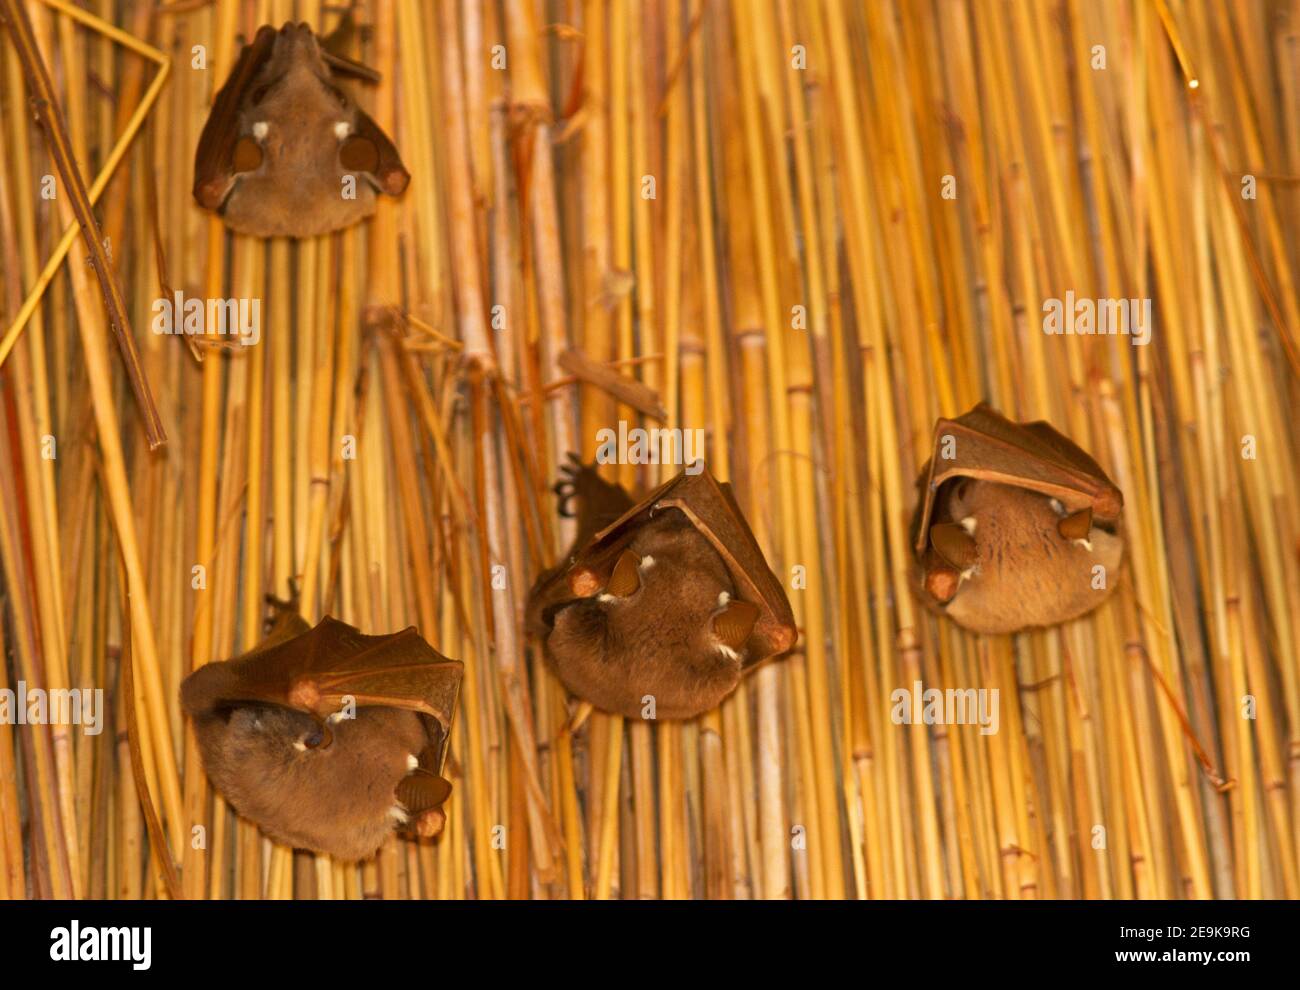 Die Wahlberg's Epauletted Fruit bat ist eine von sechs ähnlichen Arten. Die Bewegungen werden durch die Fülle der saisonalen Früchte bestimmt. Stockfoto